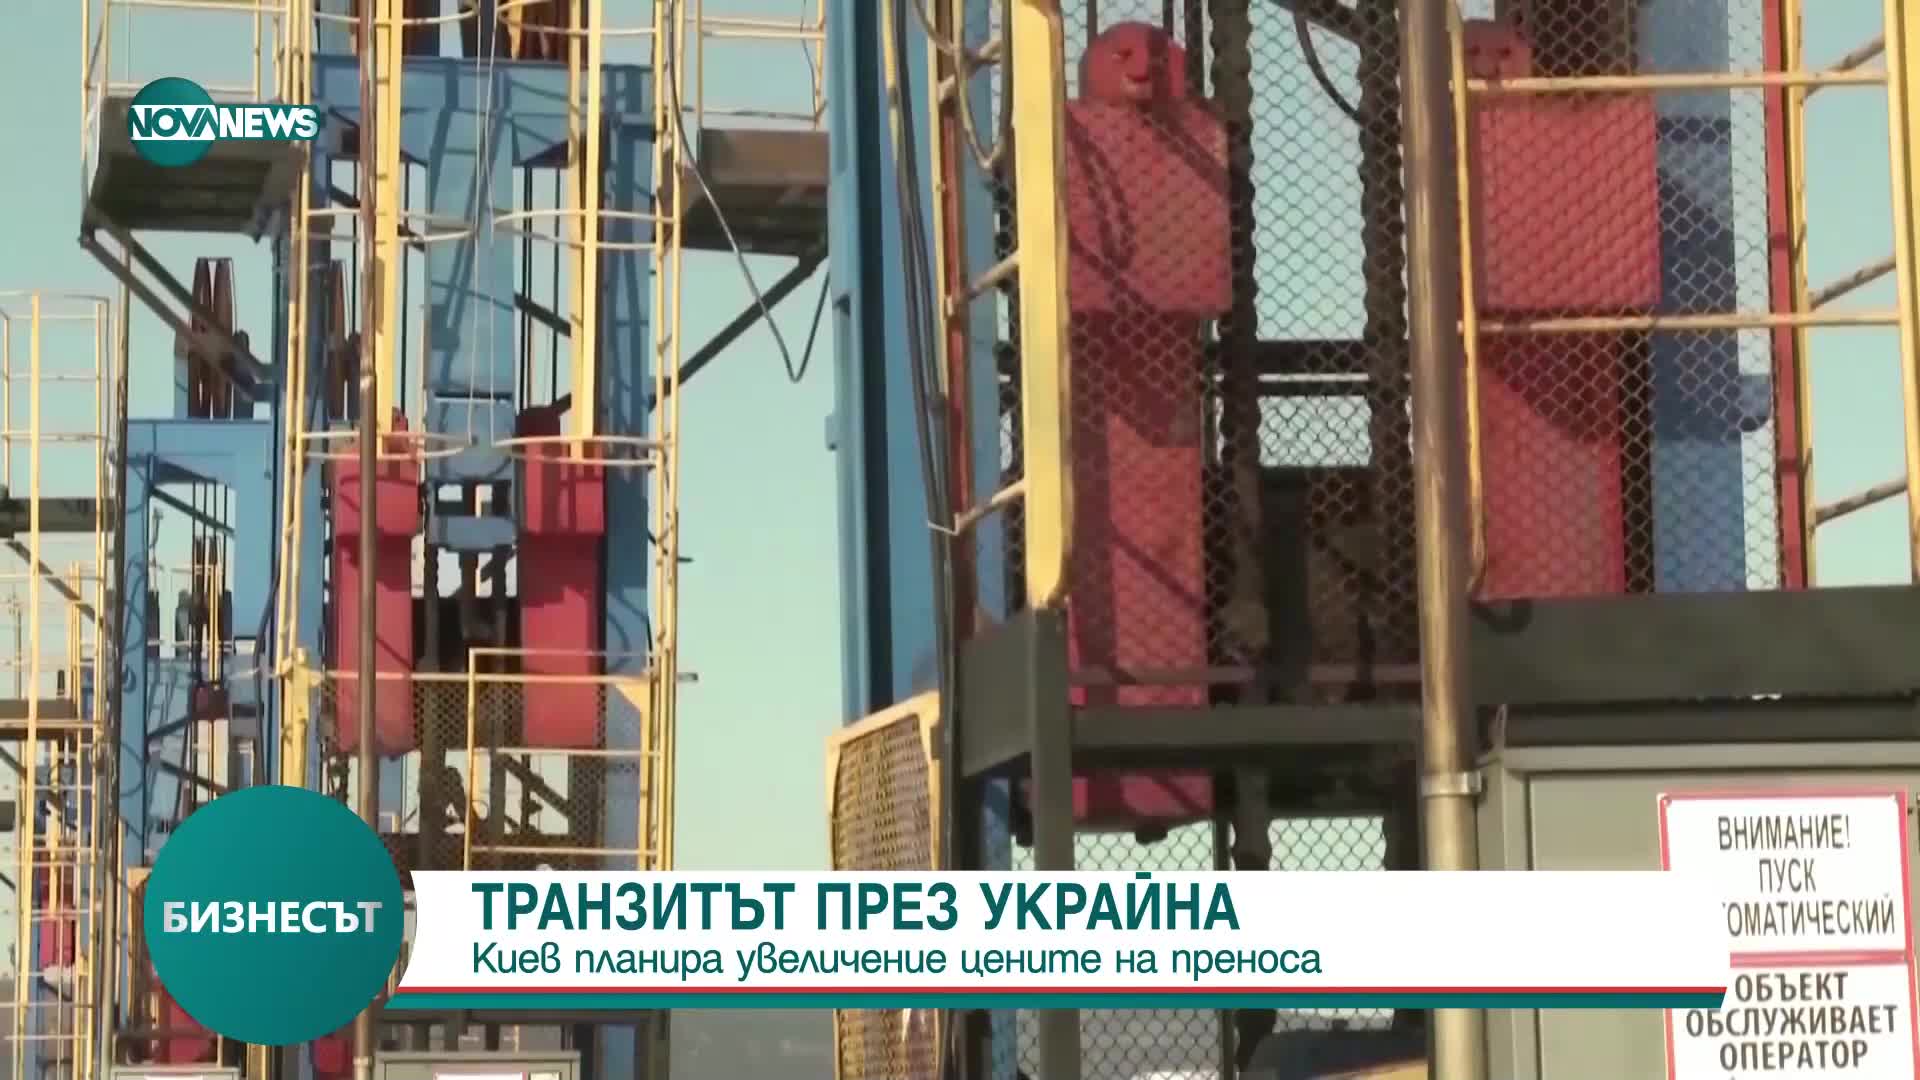 Москва: Украйна планира скок в тарифите за пренос на петрол през нейна територия